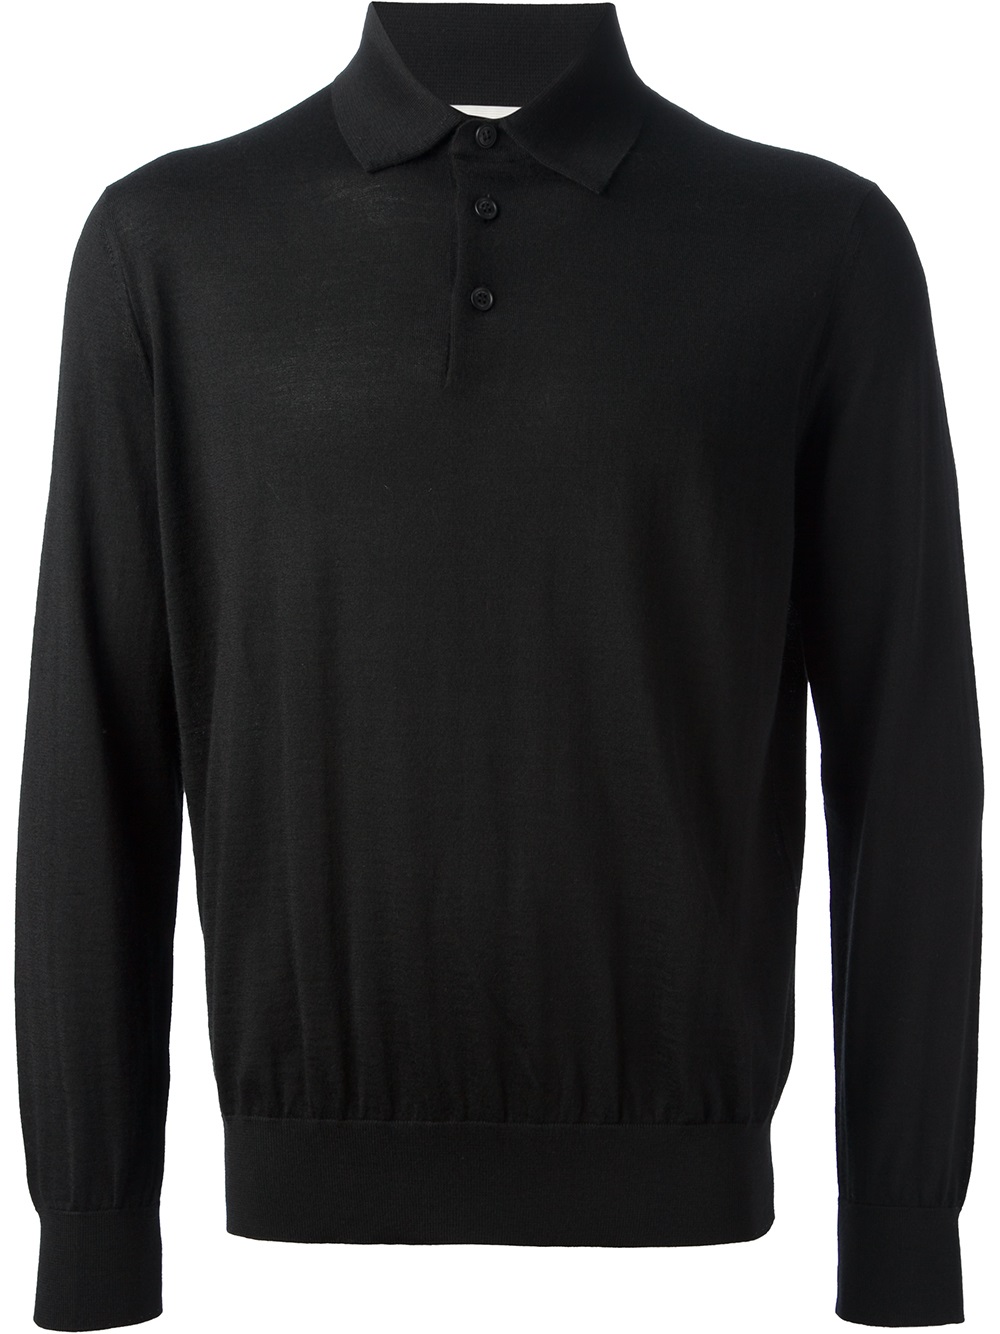 Lyst - Ermenegildo Zegna Long Sleeve Polo Shirt in Black for Men